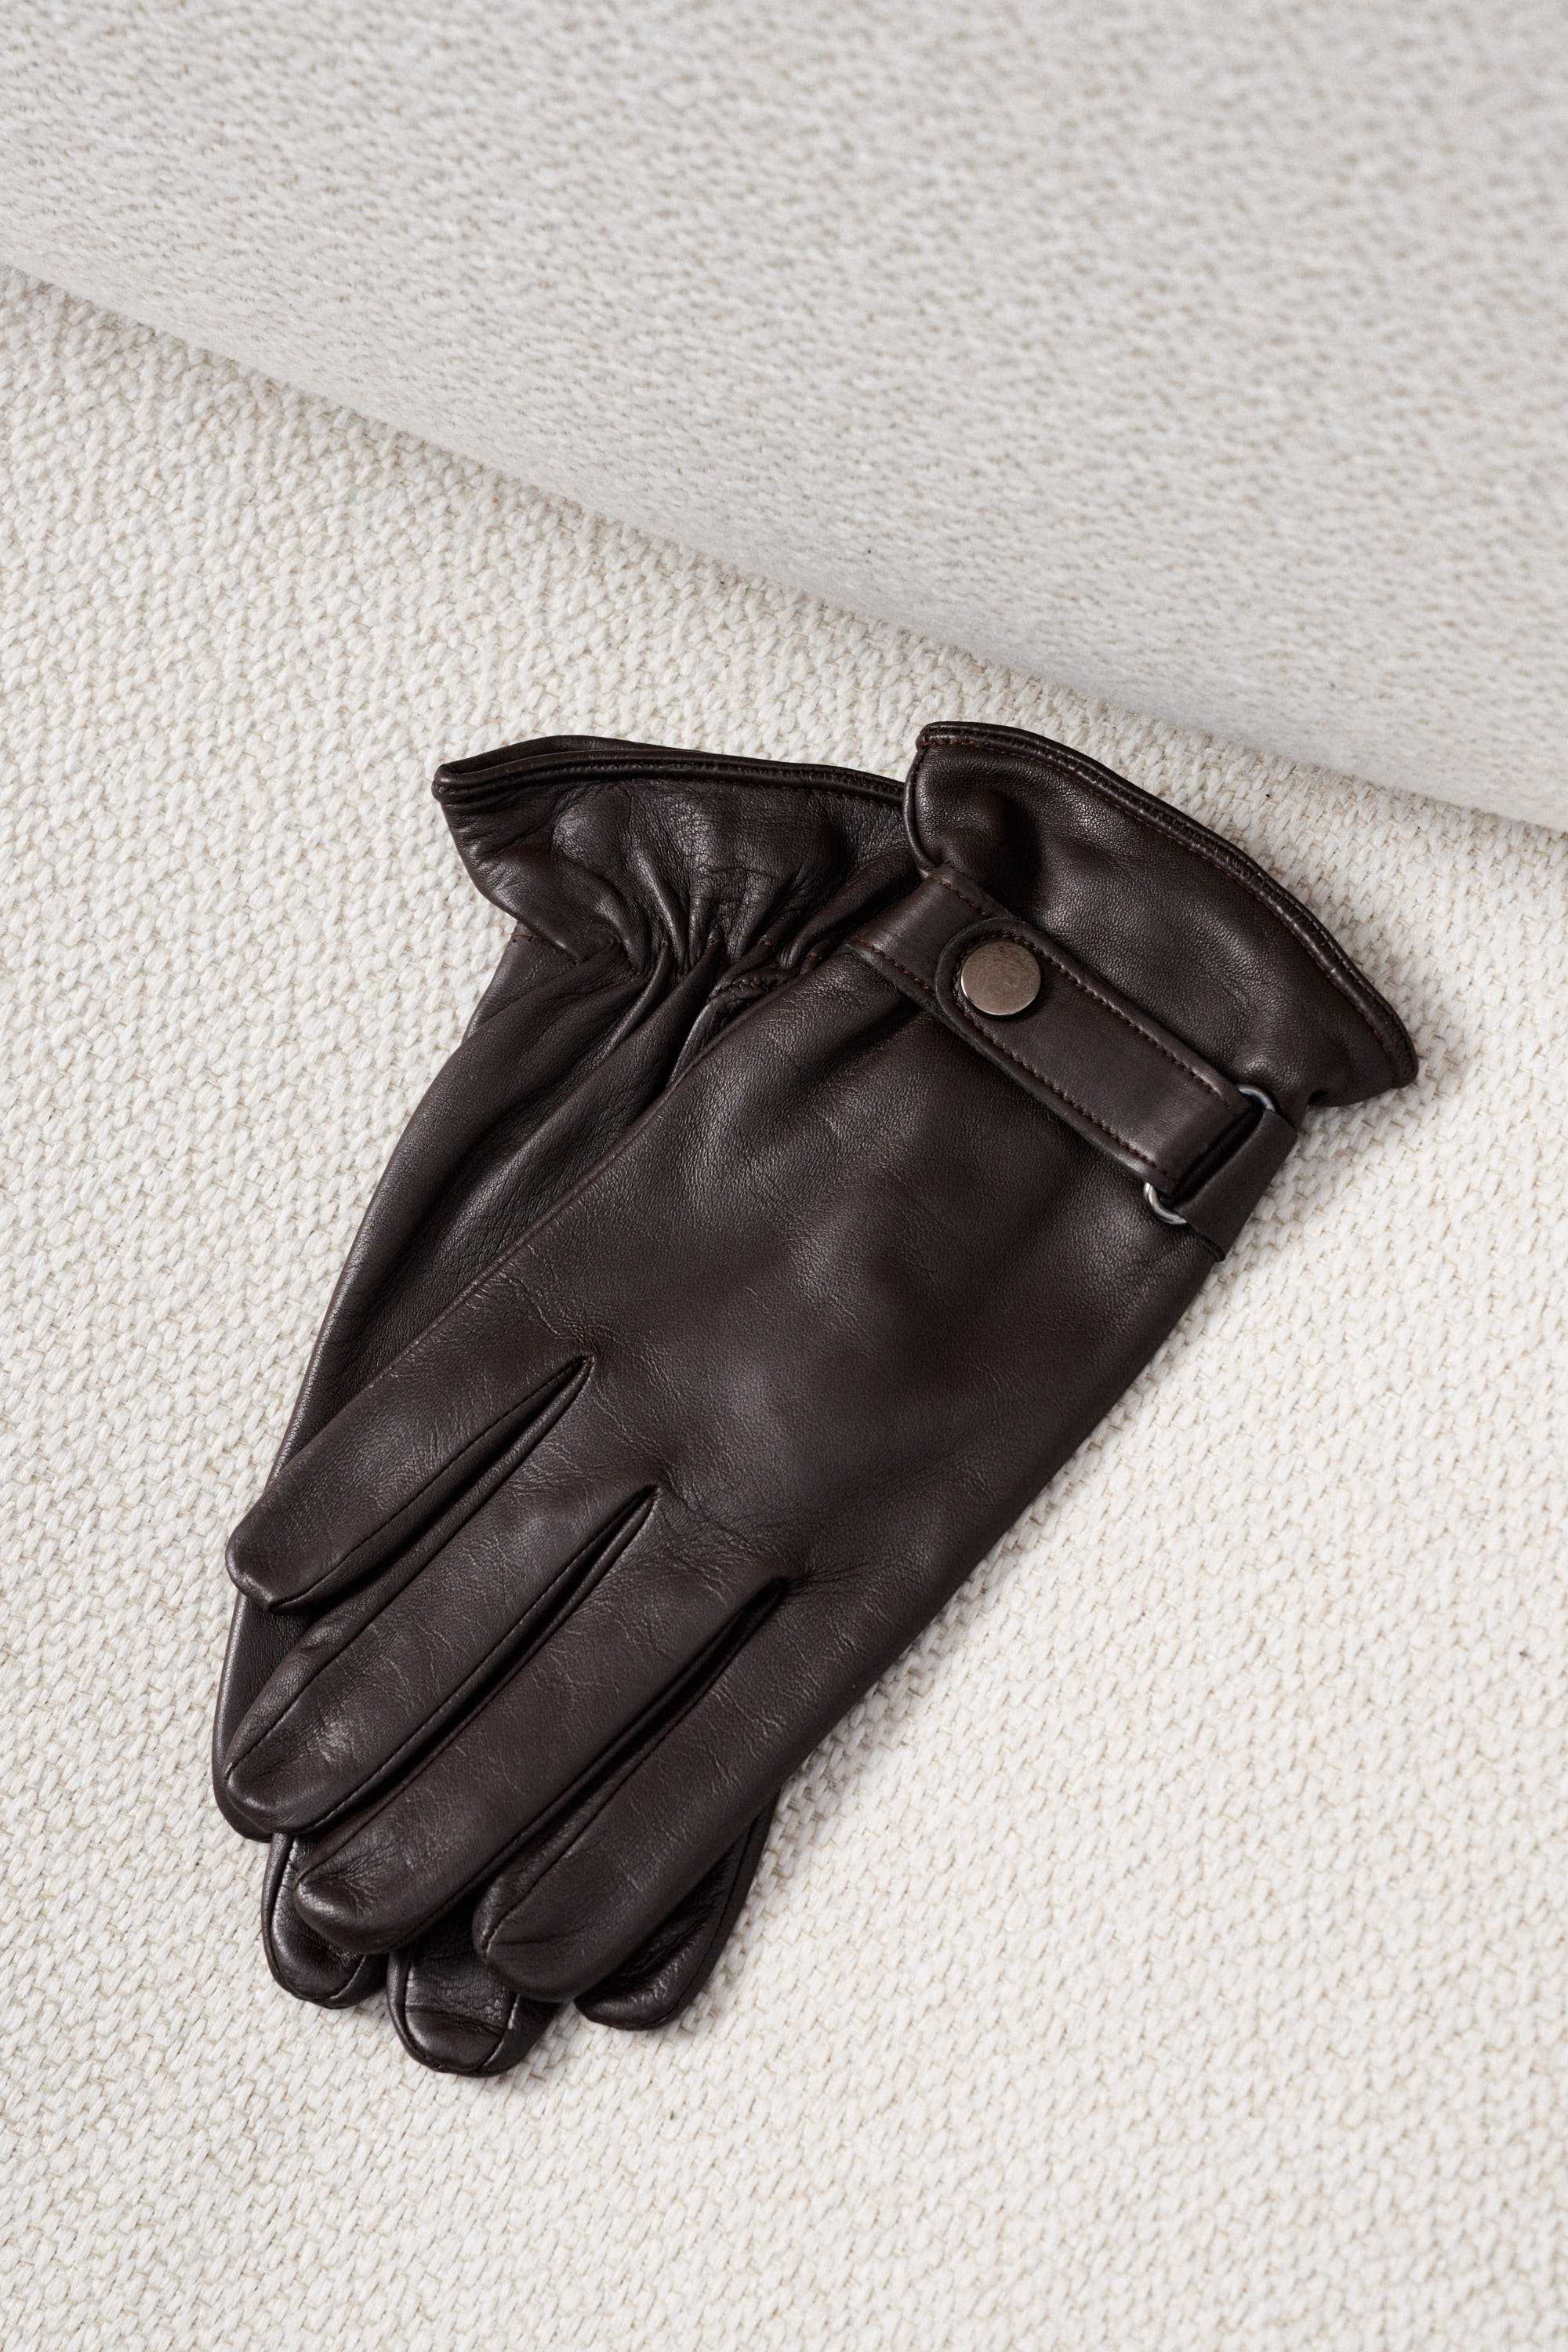 Перчатки мужские кожаные коричневые на резинке с застежкой